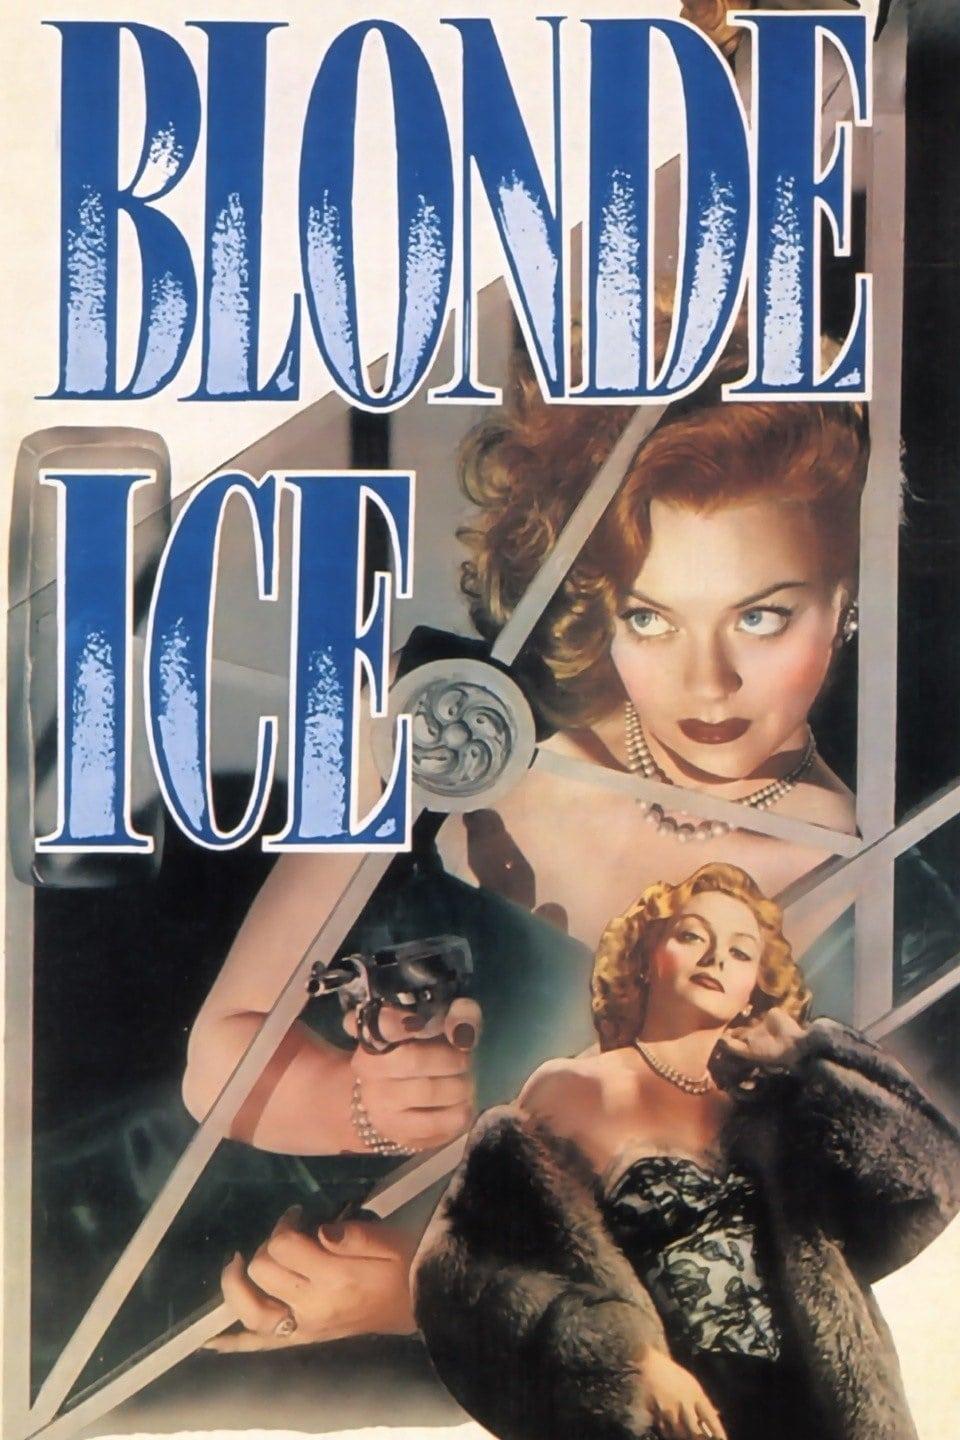 Bondes Eis poster